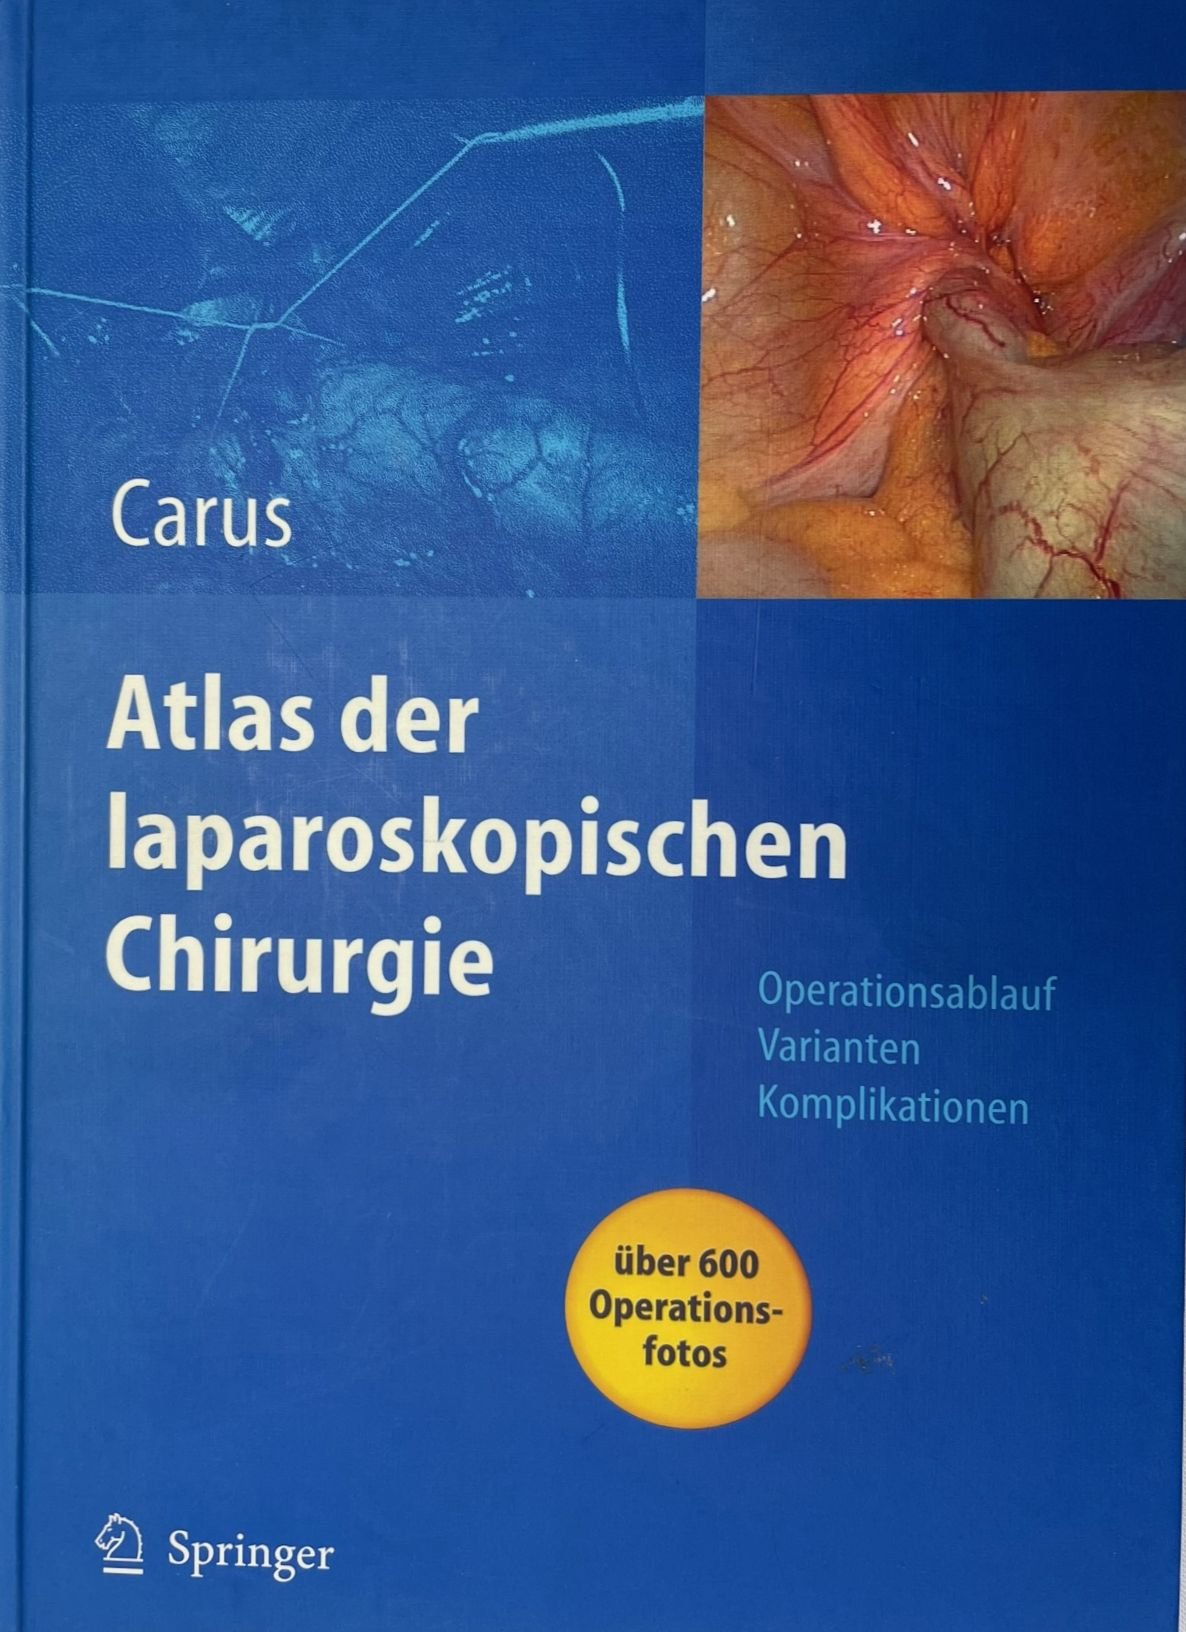 Atlas der laparoskopischen Chirurgie (Krankenhausmuseum Bielefeld e.V. CC BY-NC-SA)